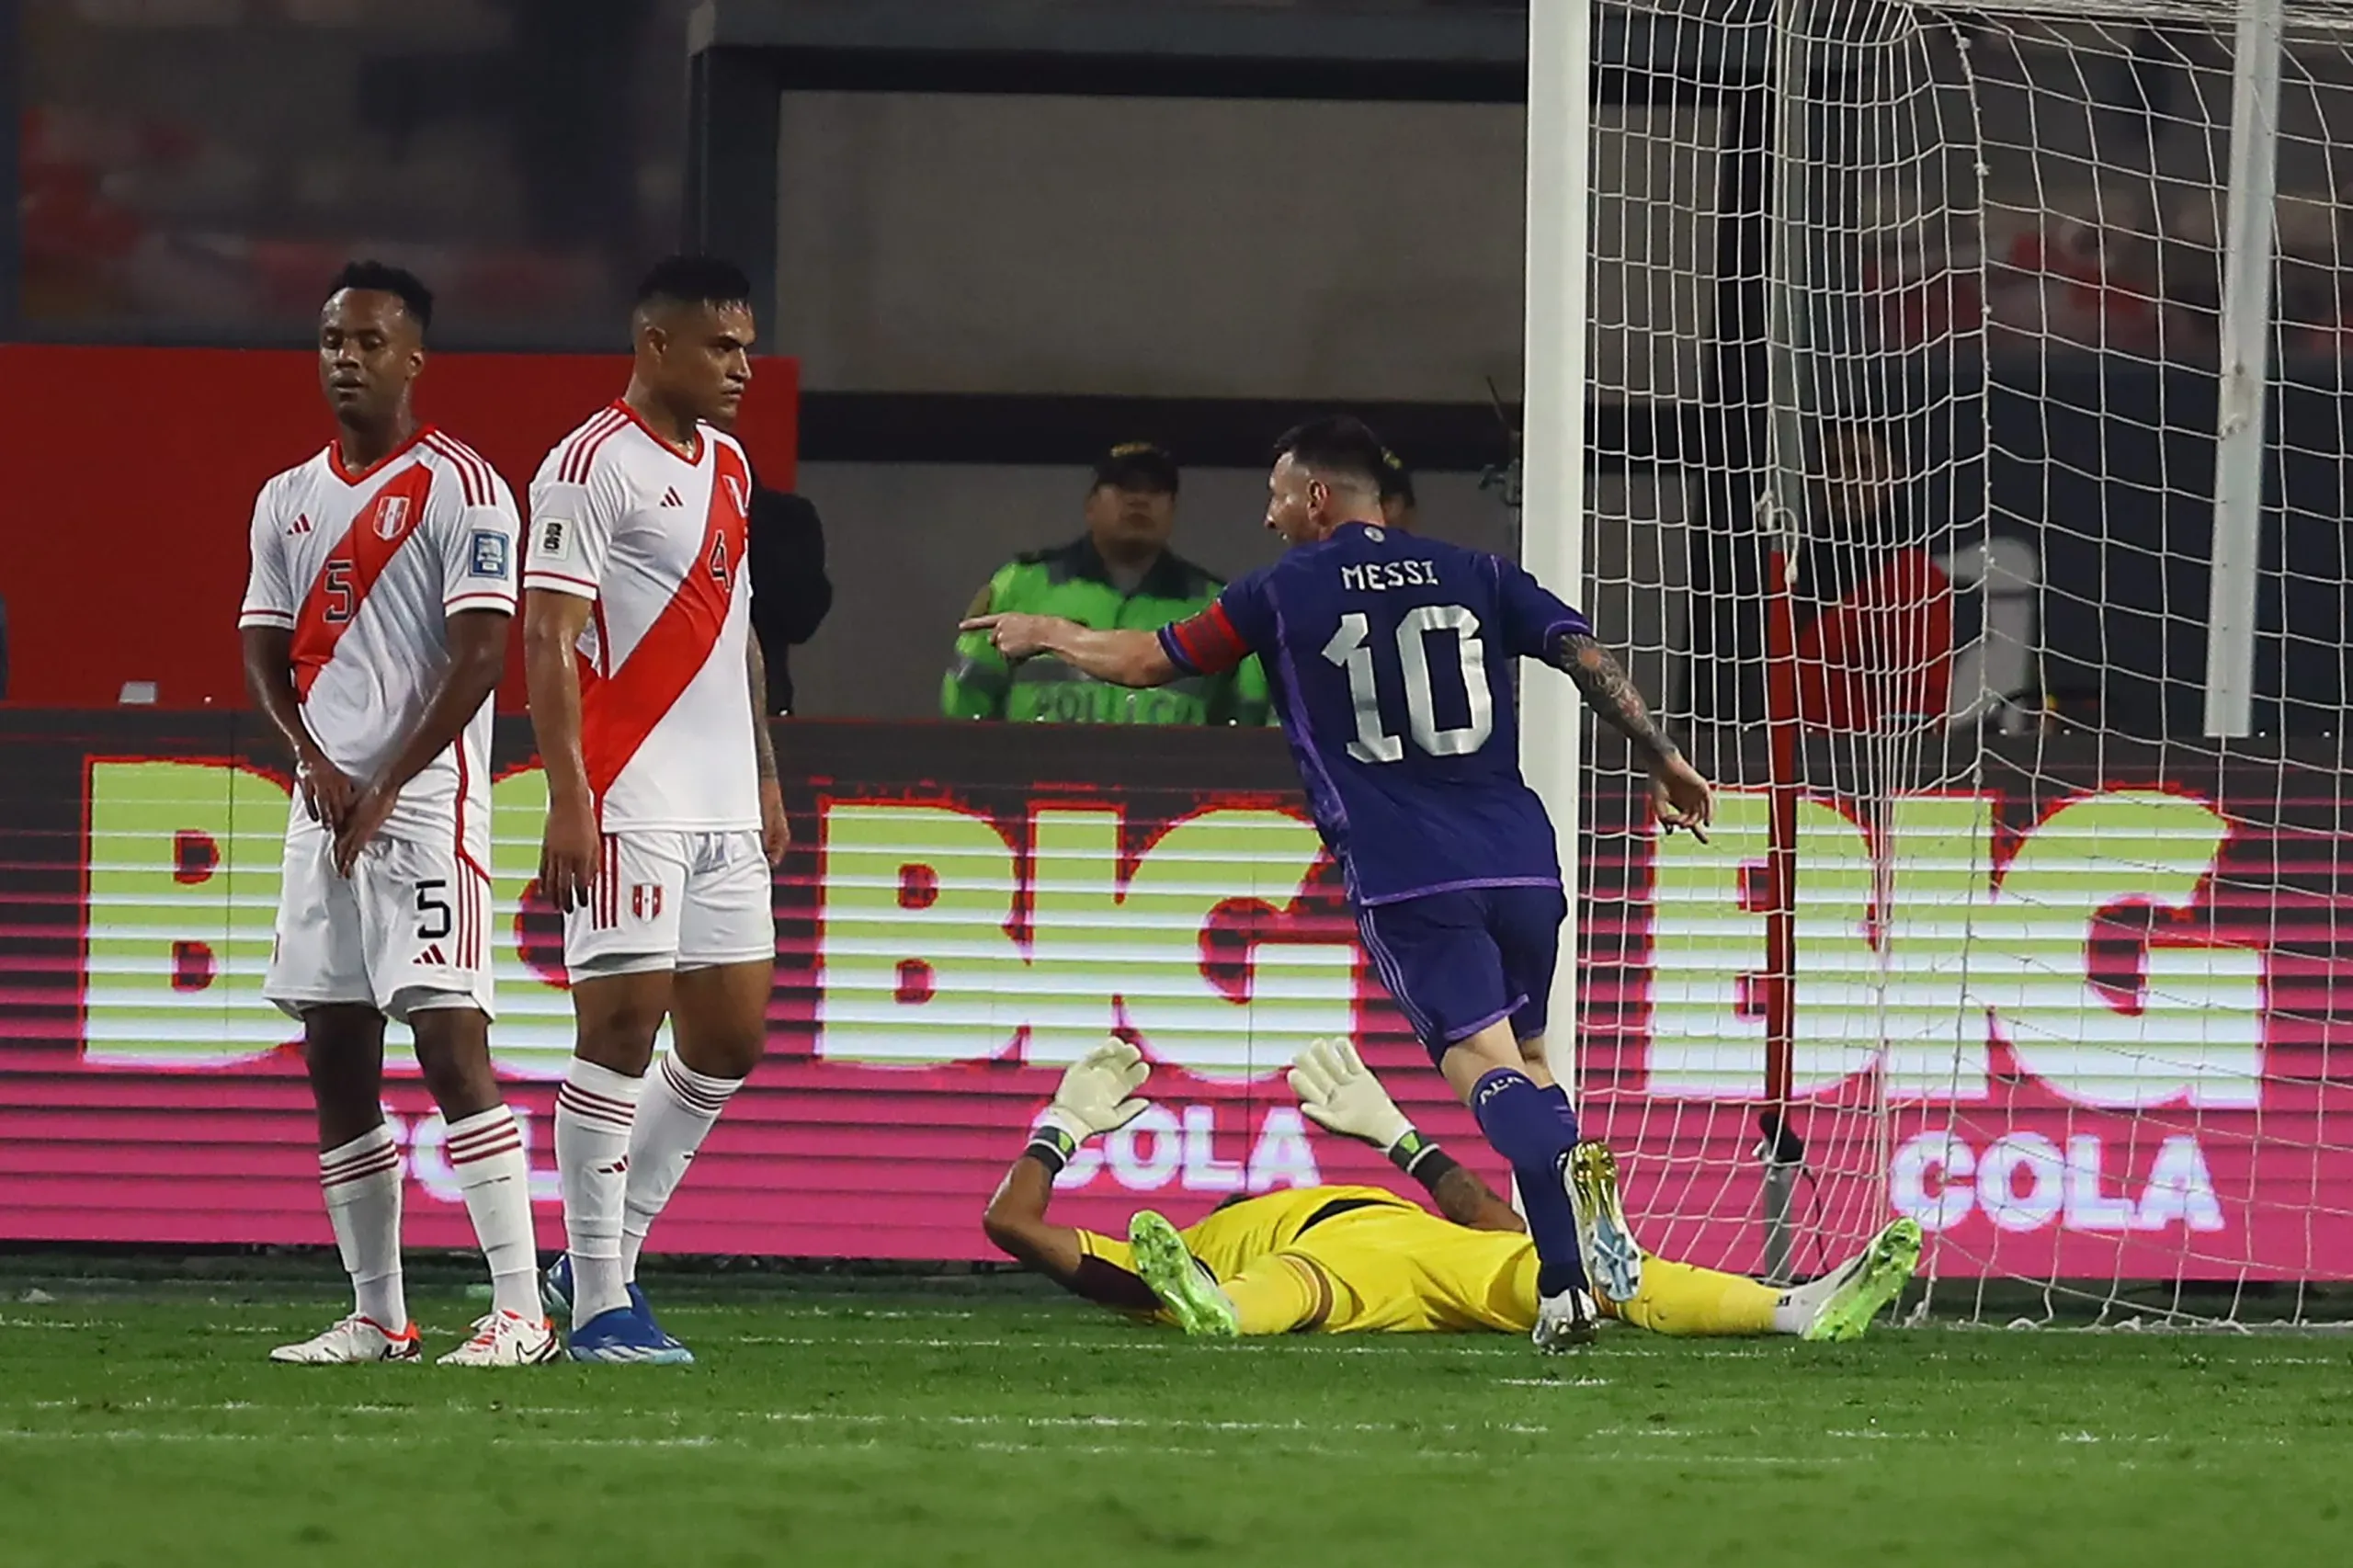 Lionel Messi marcando gol contra a Seleção Peruana na vitória por 2 a 0 em Lima, Peru. (Photo by Leonardo Fernandez/Getty Images)